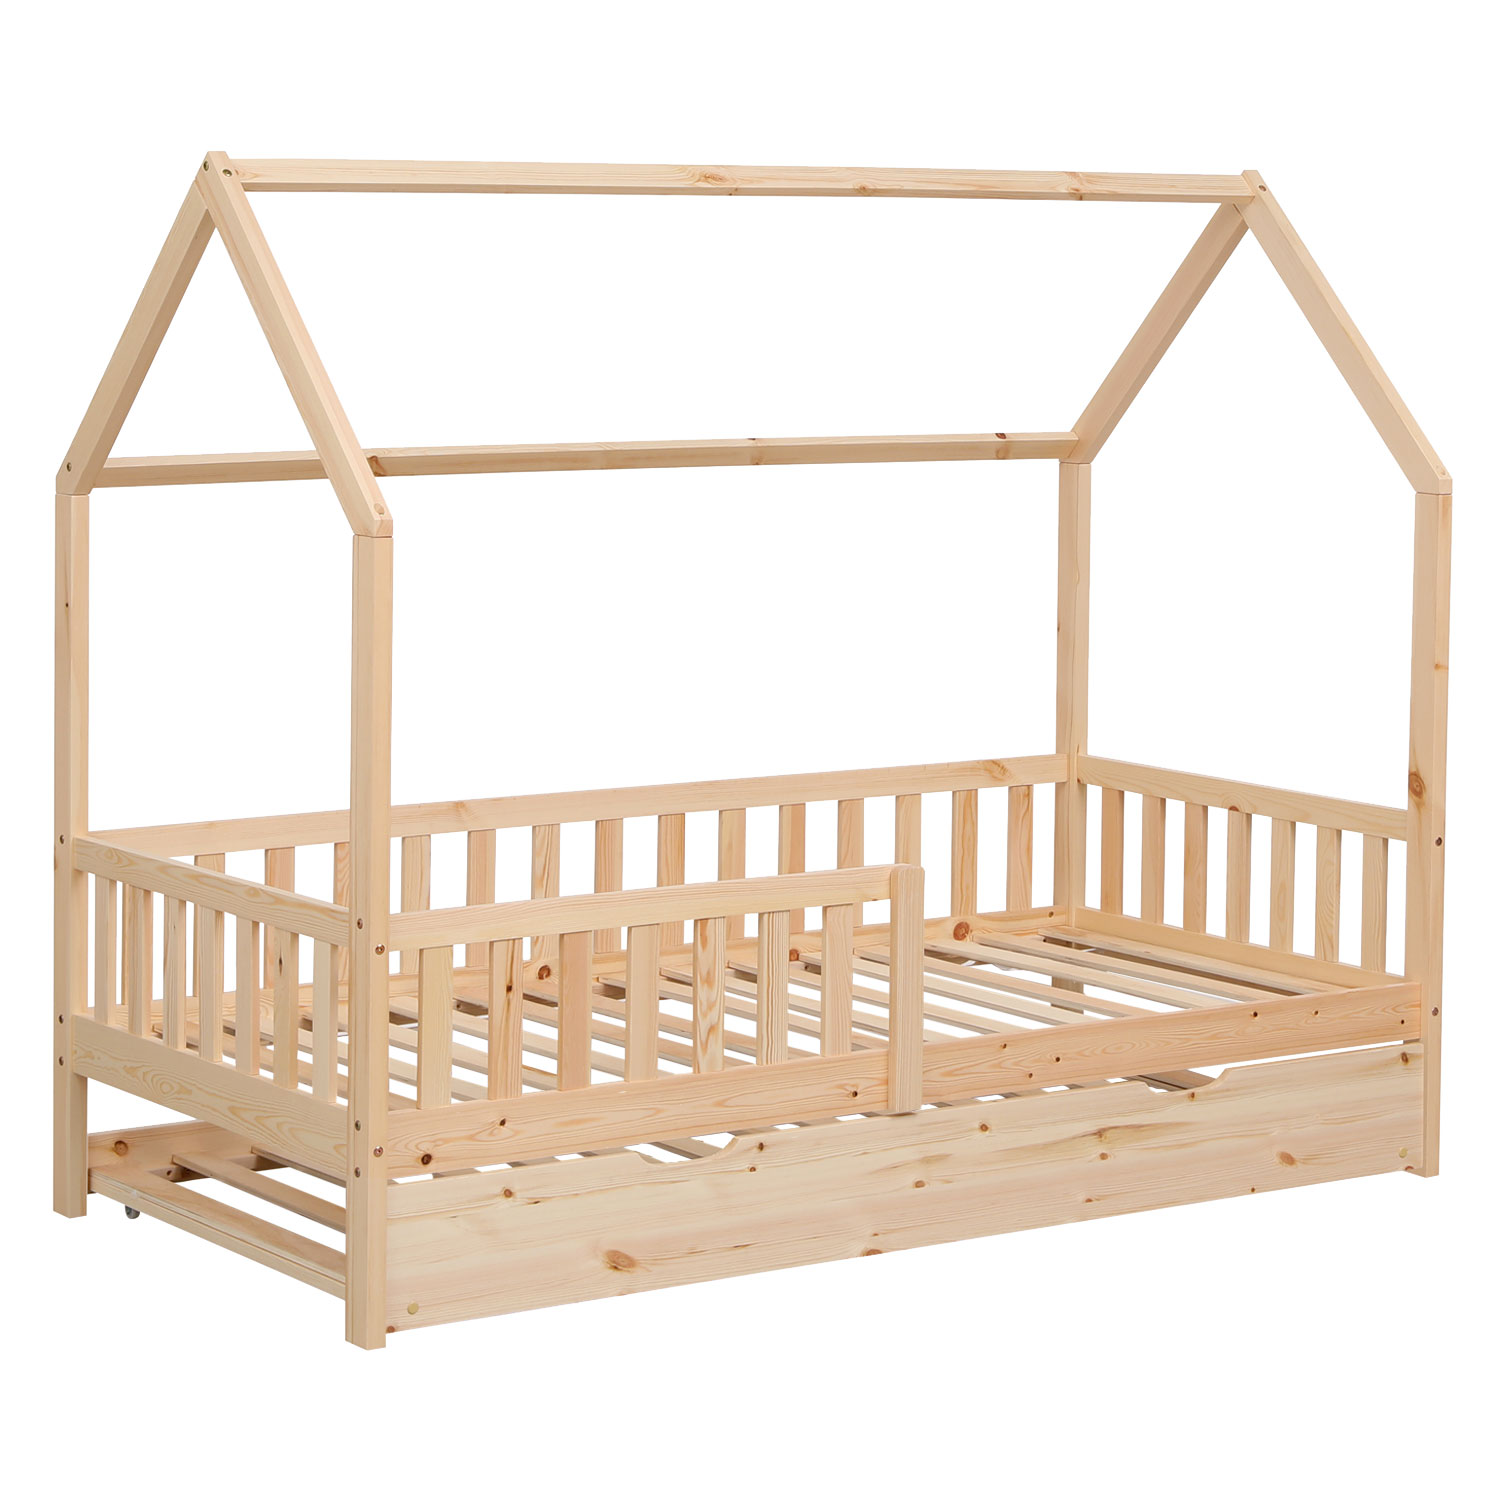 MARCEAU houten bed voor kinderen 190x90cm